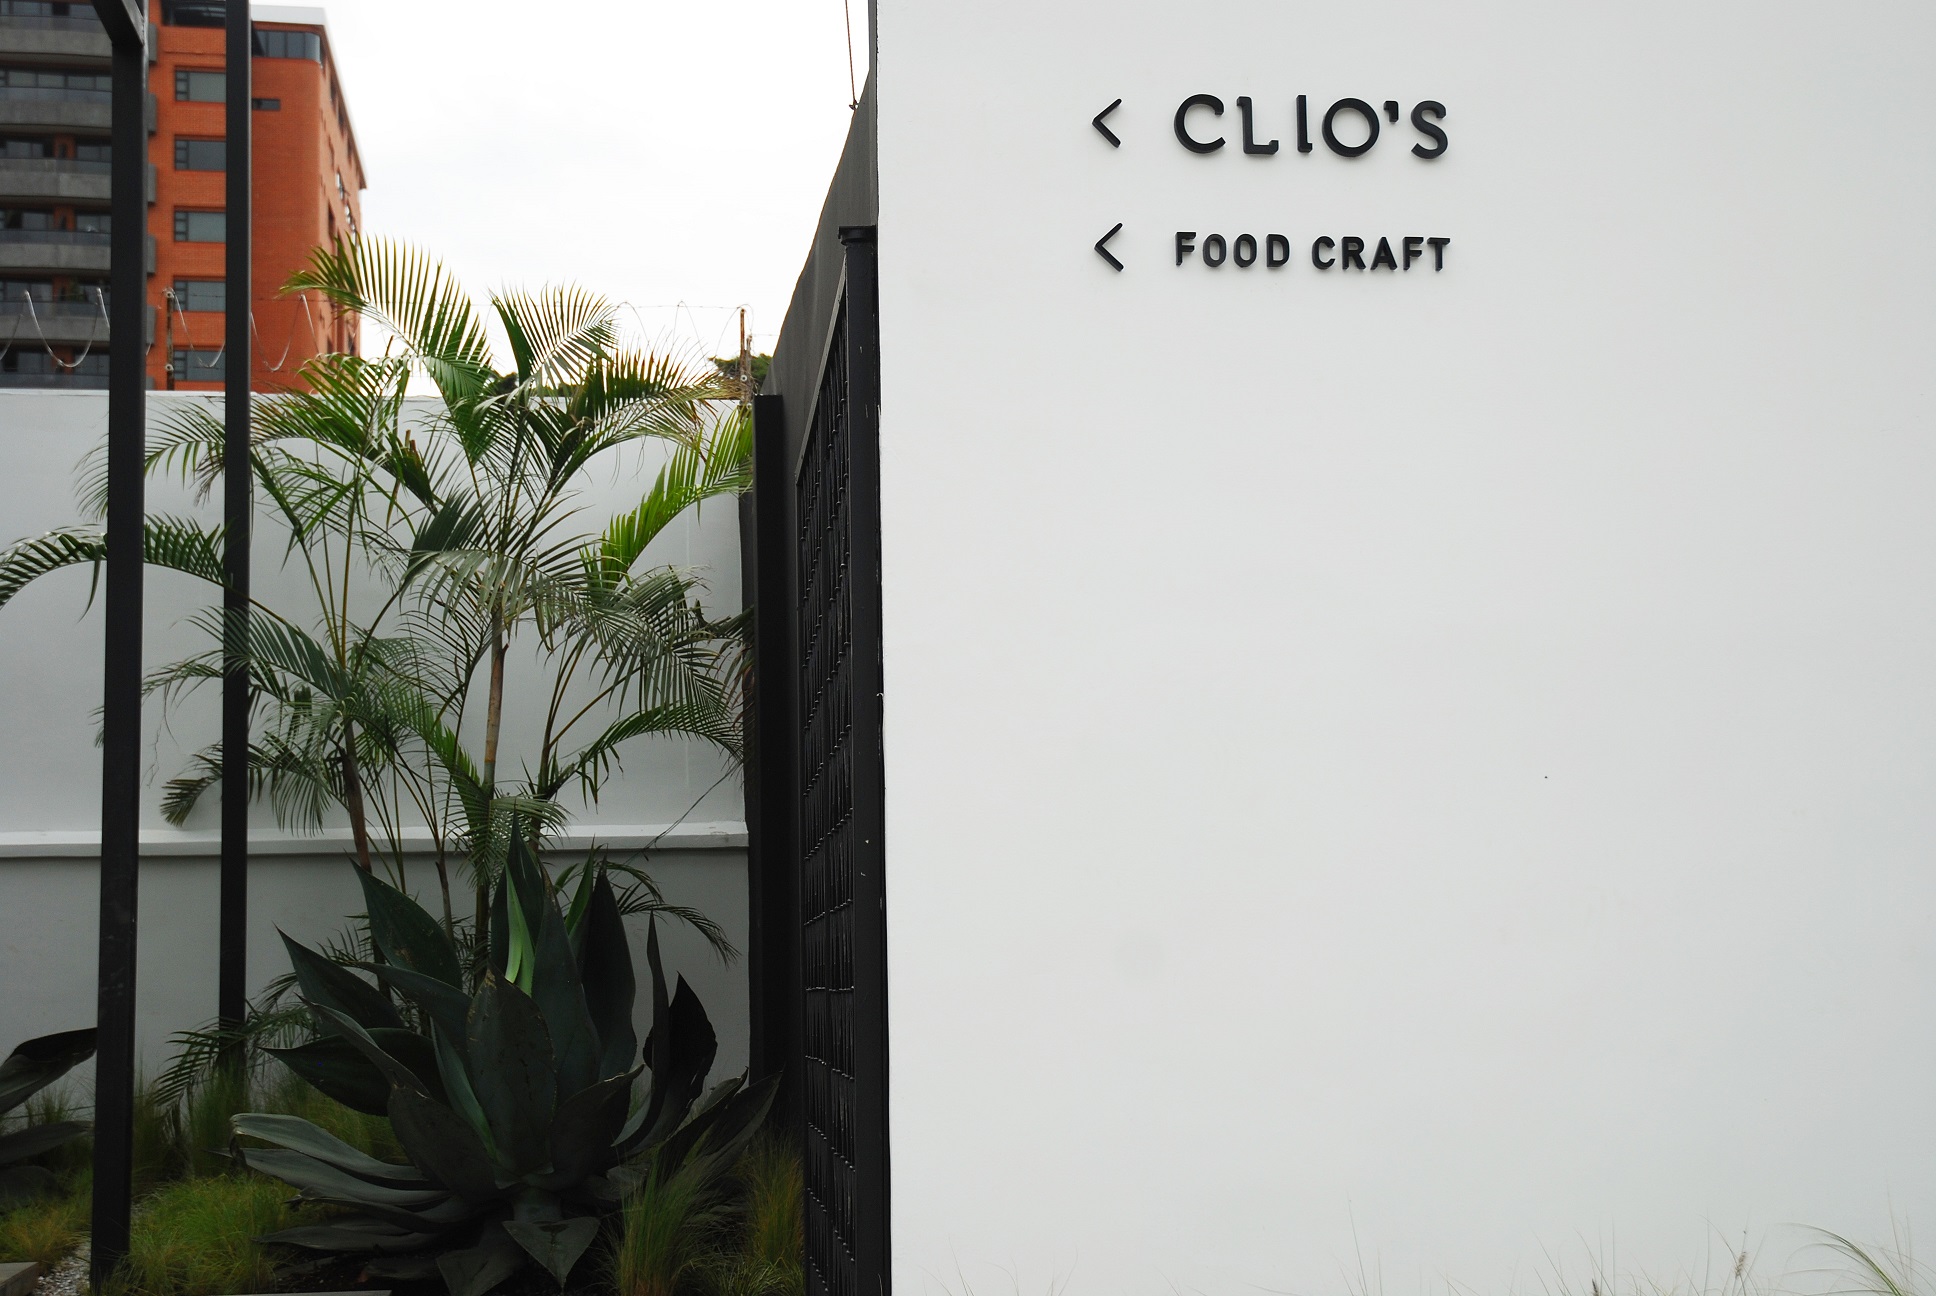 Restaurante Clio’s abre sus puertas en Guatemala